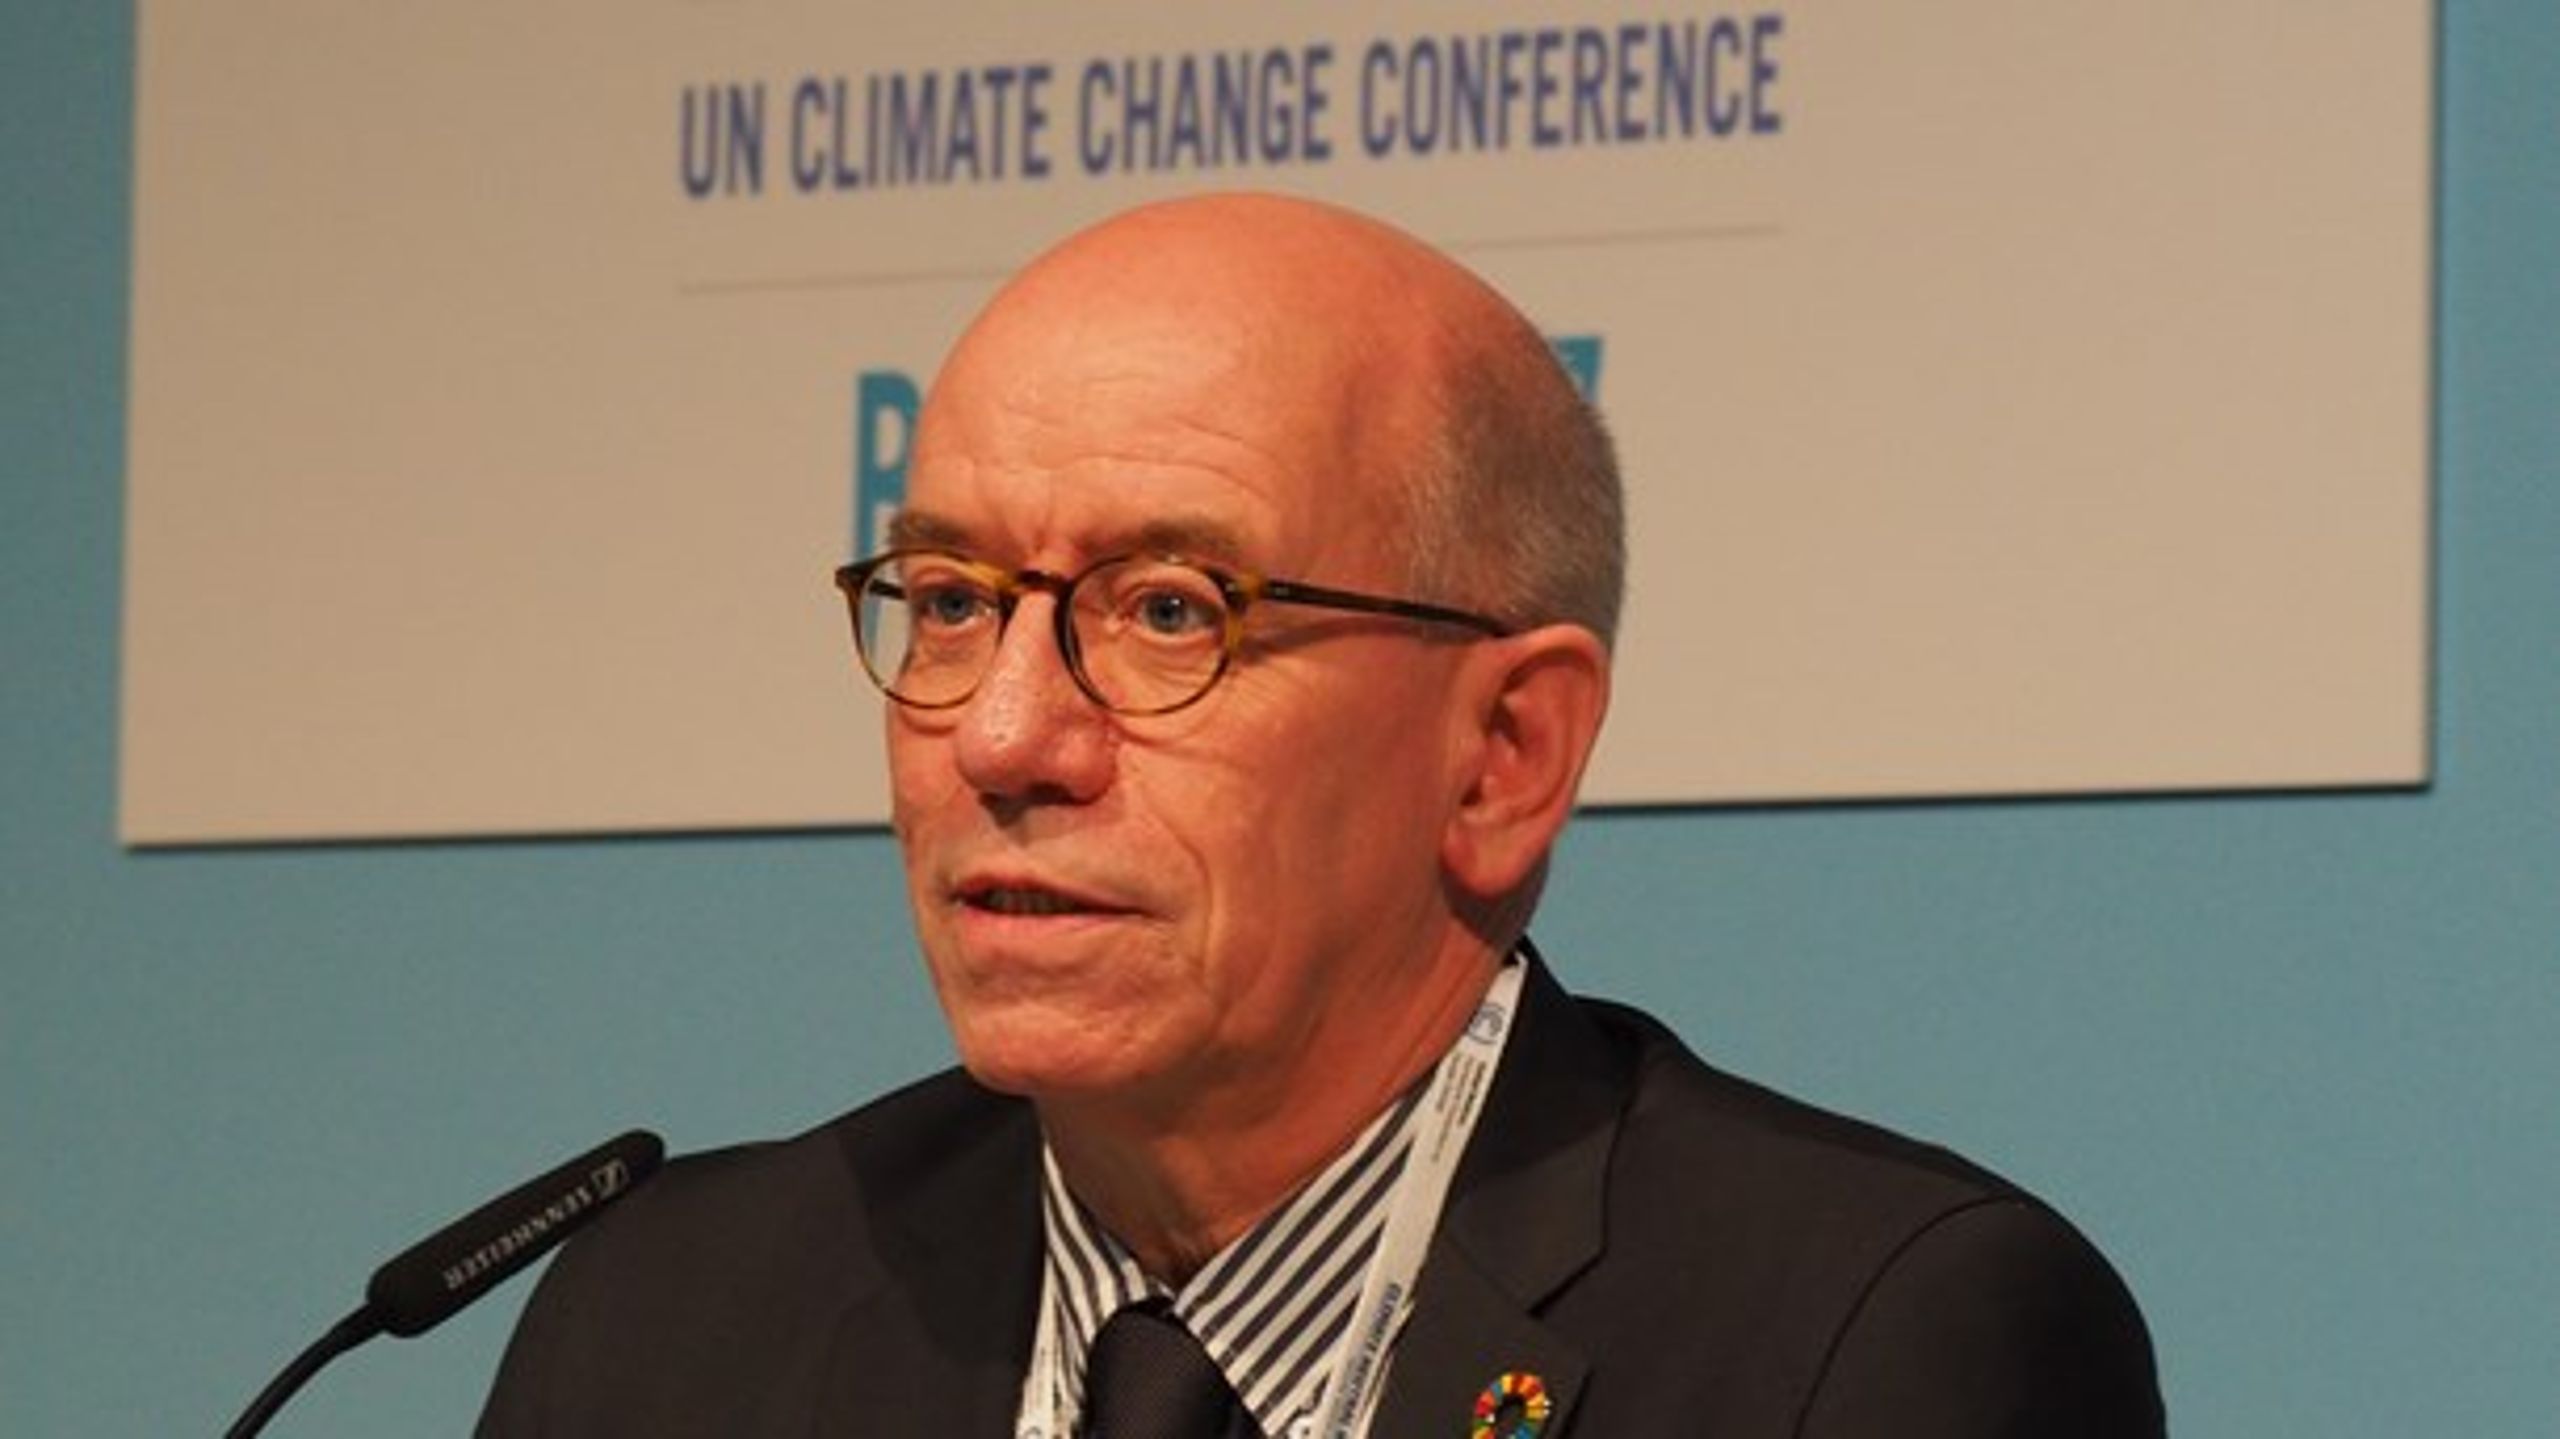 Klimaindsatserne går alt for langsomt på det politiske niveau. Der skal ske noget nu for at undgå de værste konsekvenser, skriver direktør for UNEP DTU Partnership, John M. Christensen.